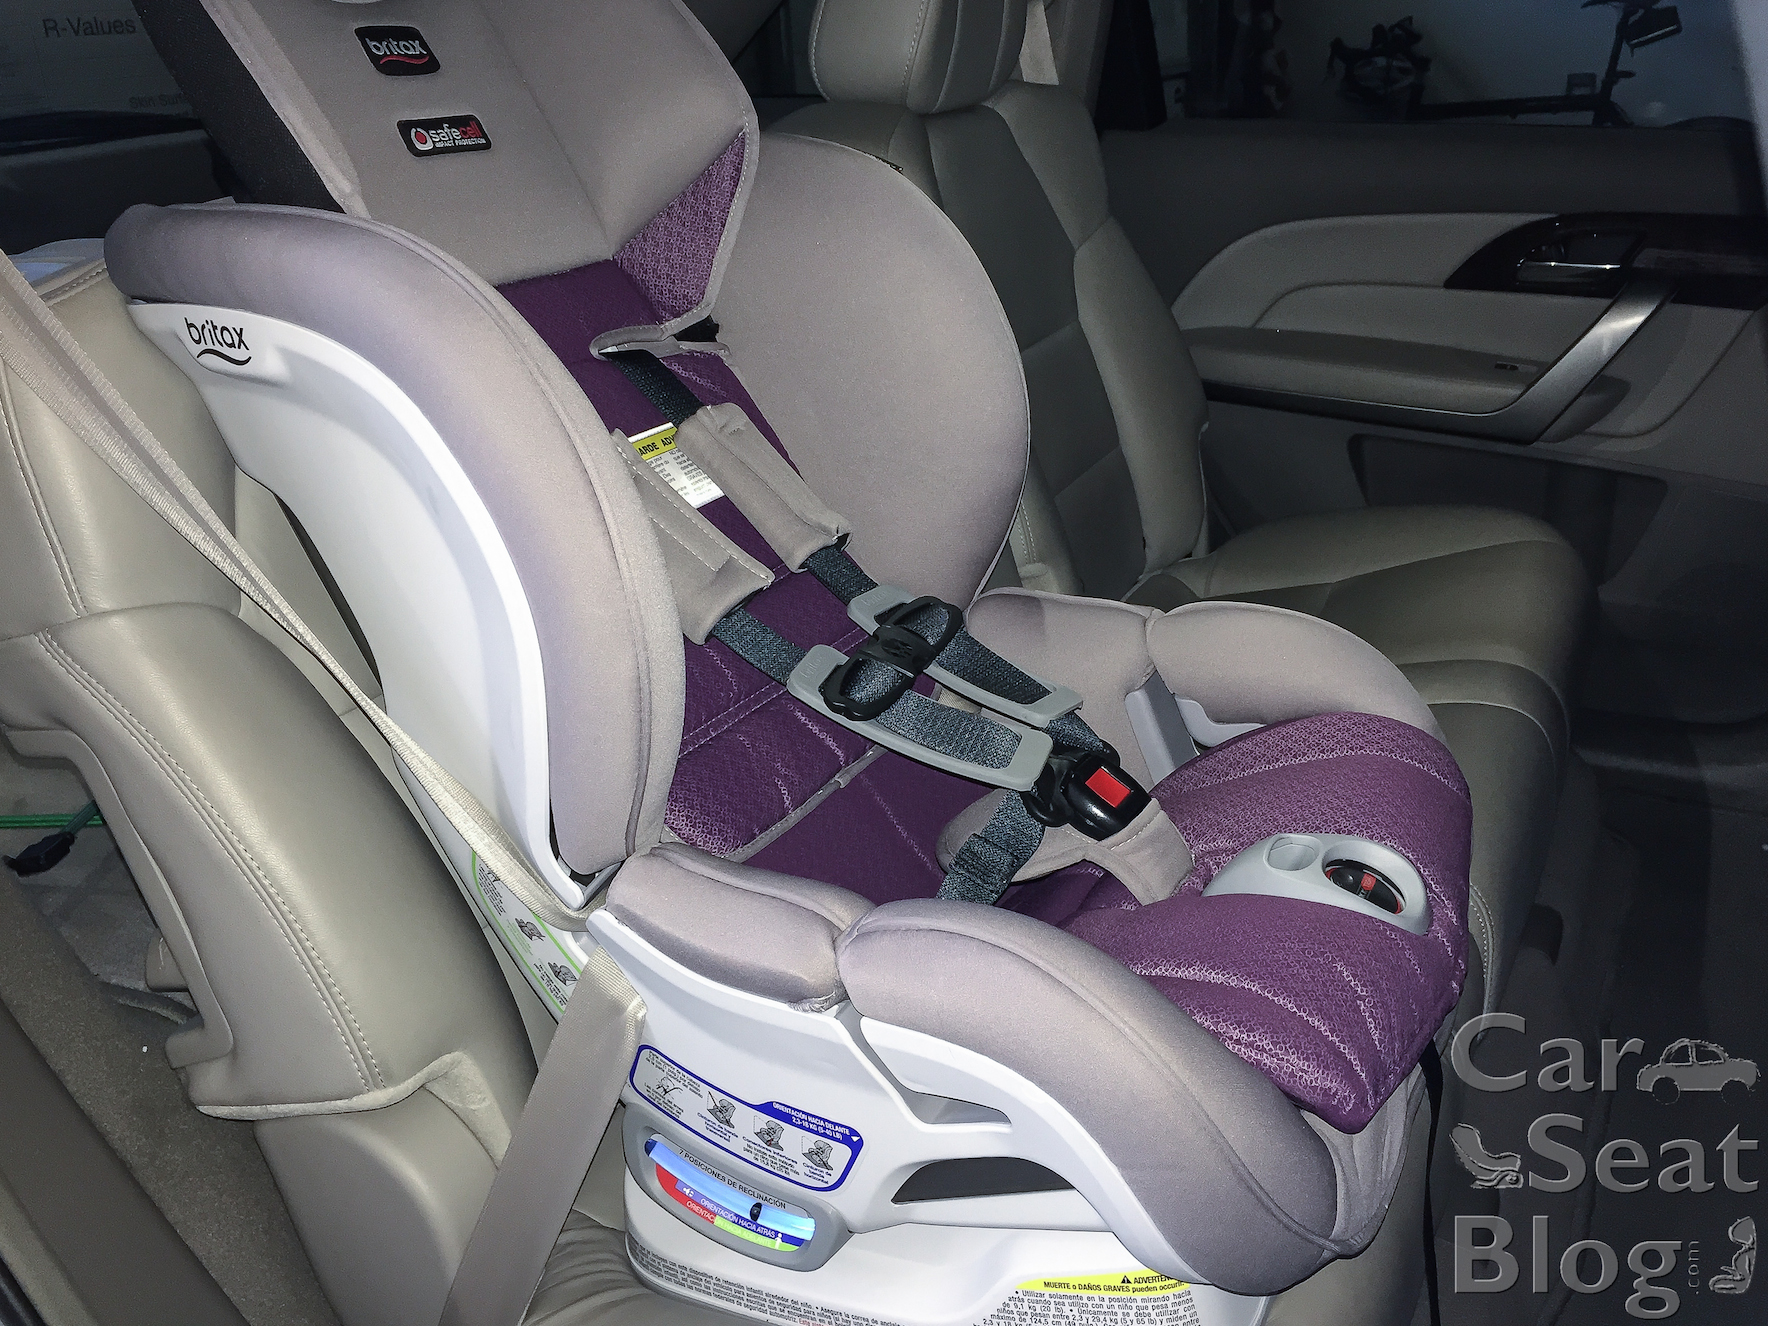 britax forward facing car seat